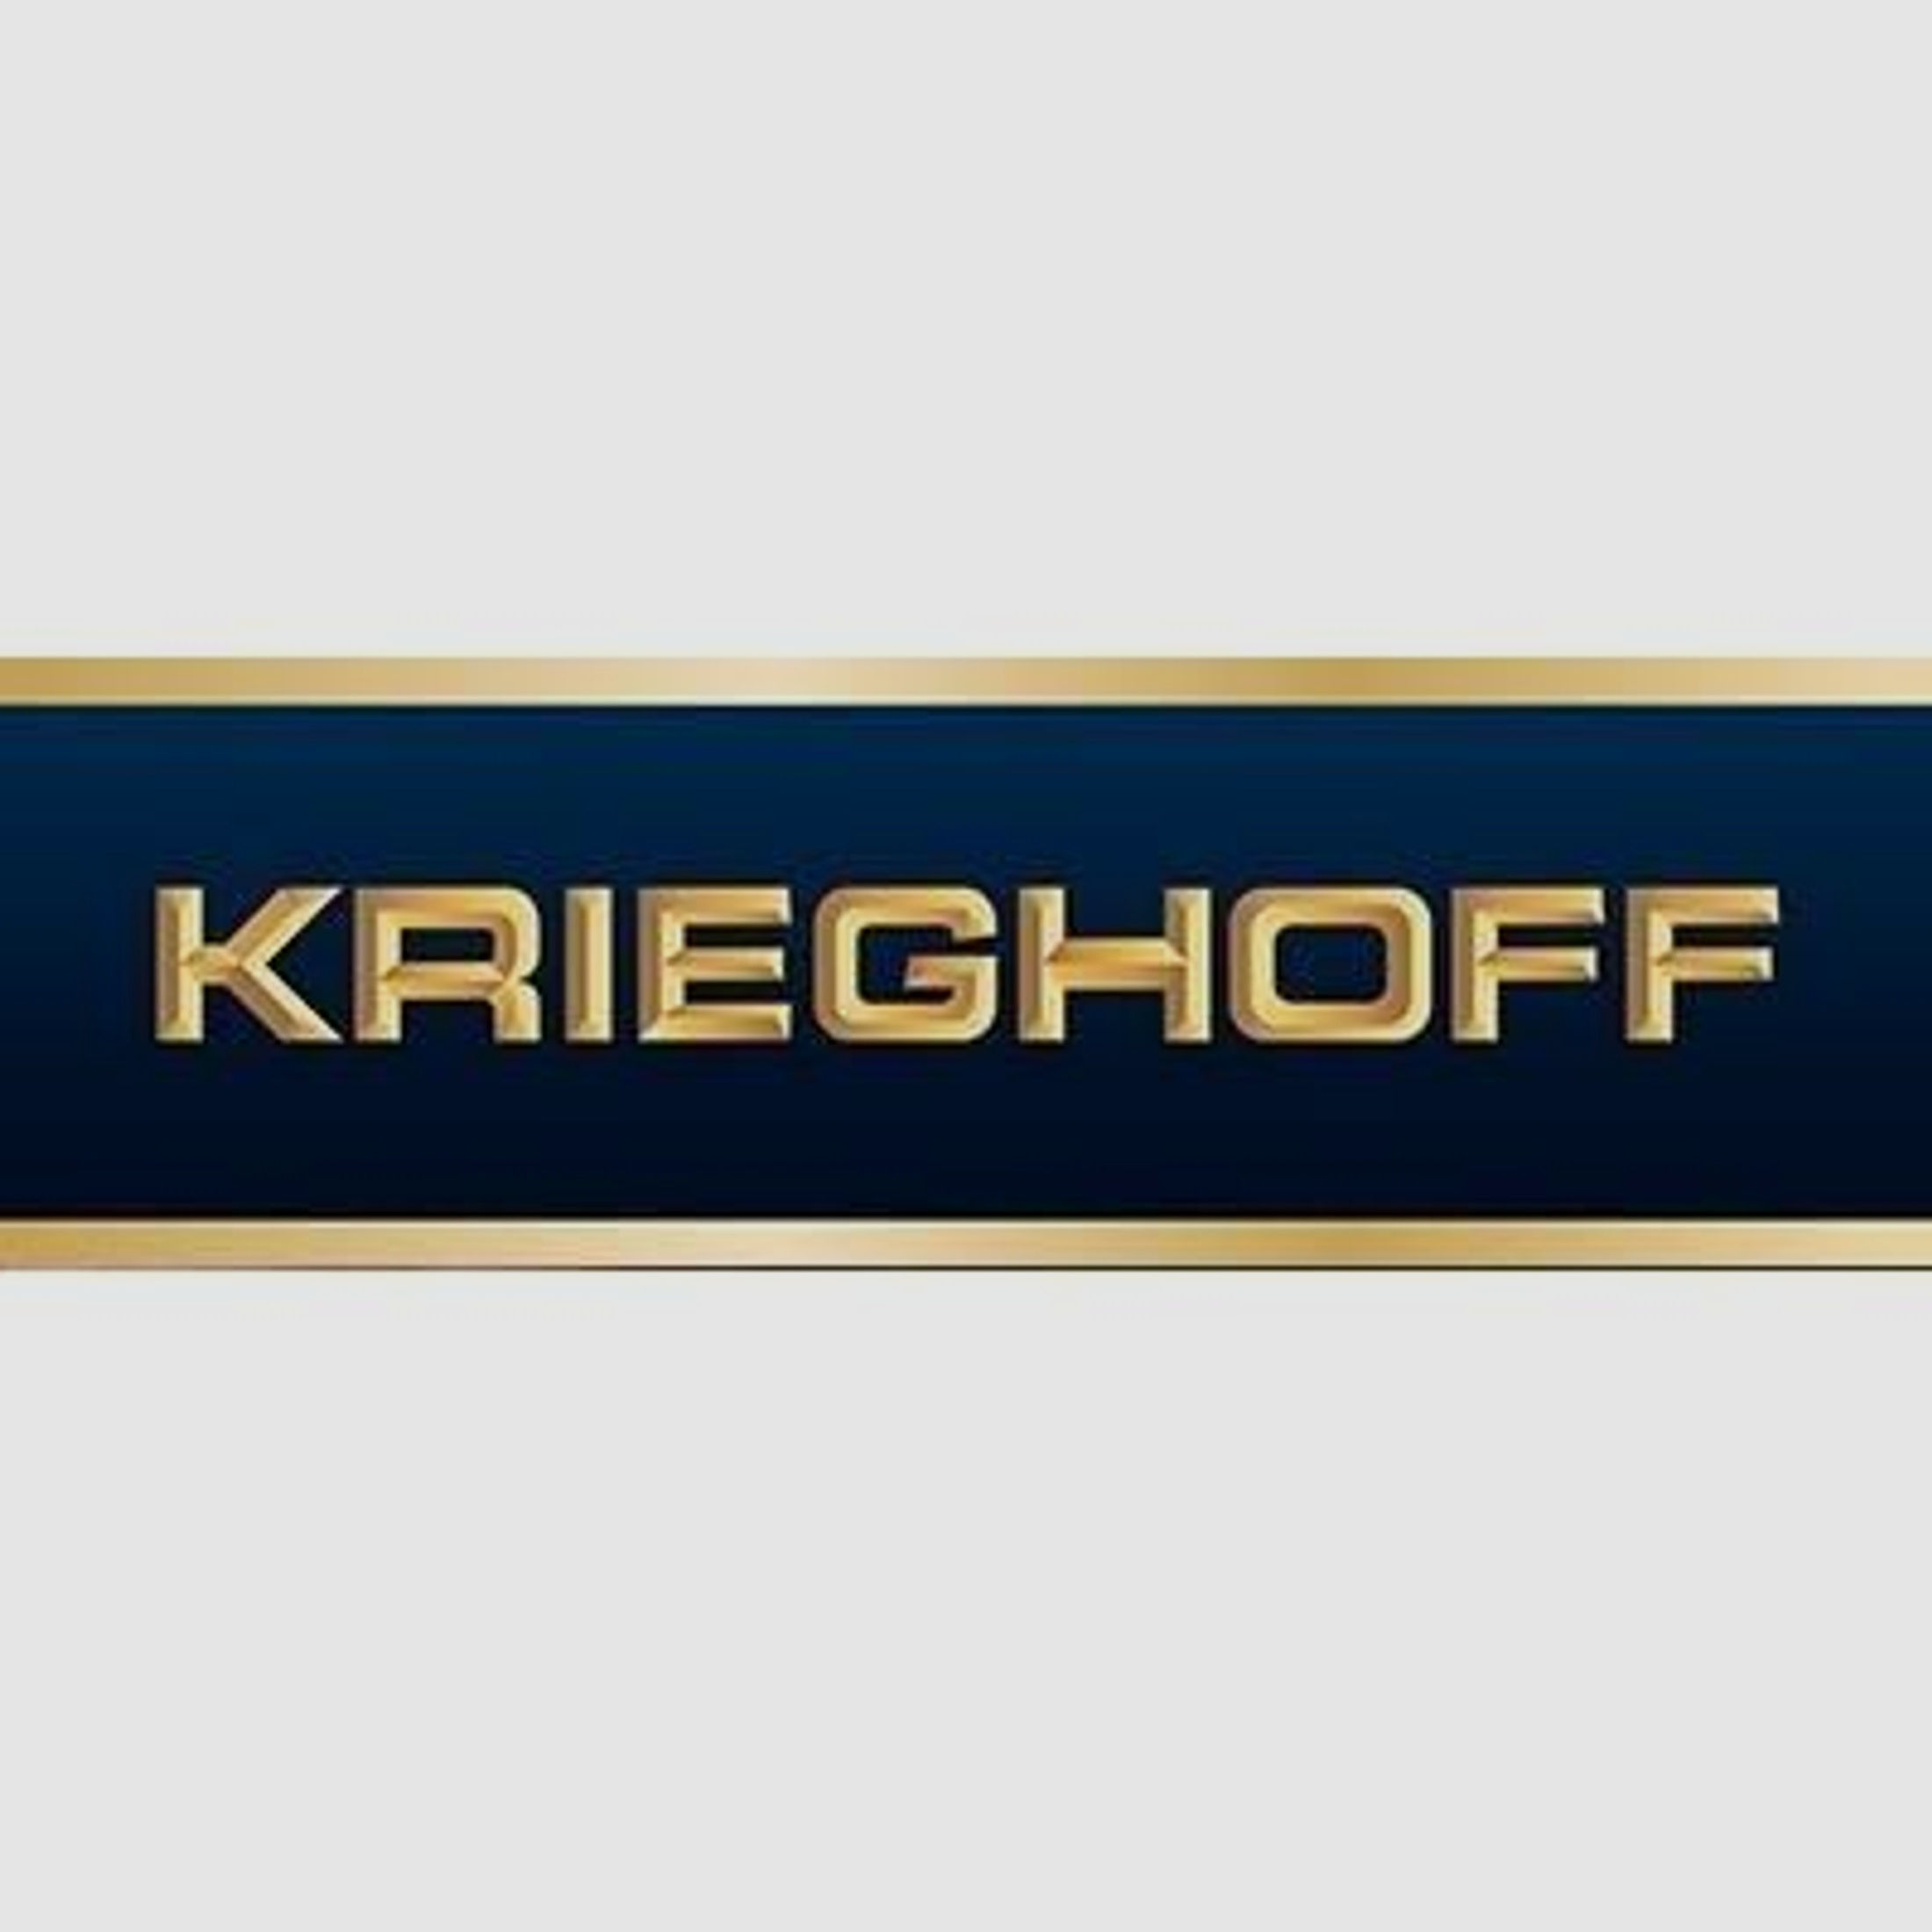 KRIEGHOFF Mehrpreis für Neuwaffe Schaftholz #1 - Mehrpreis Optima-Ultra-Classic-Hubertus